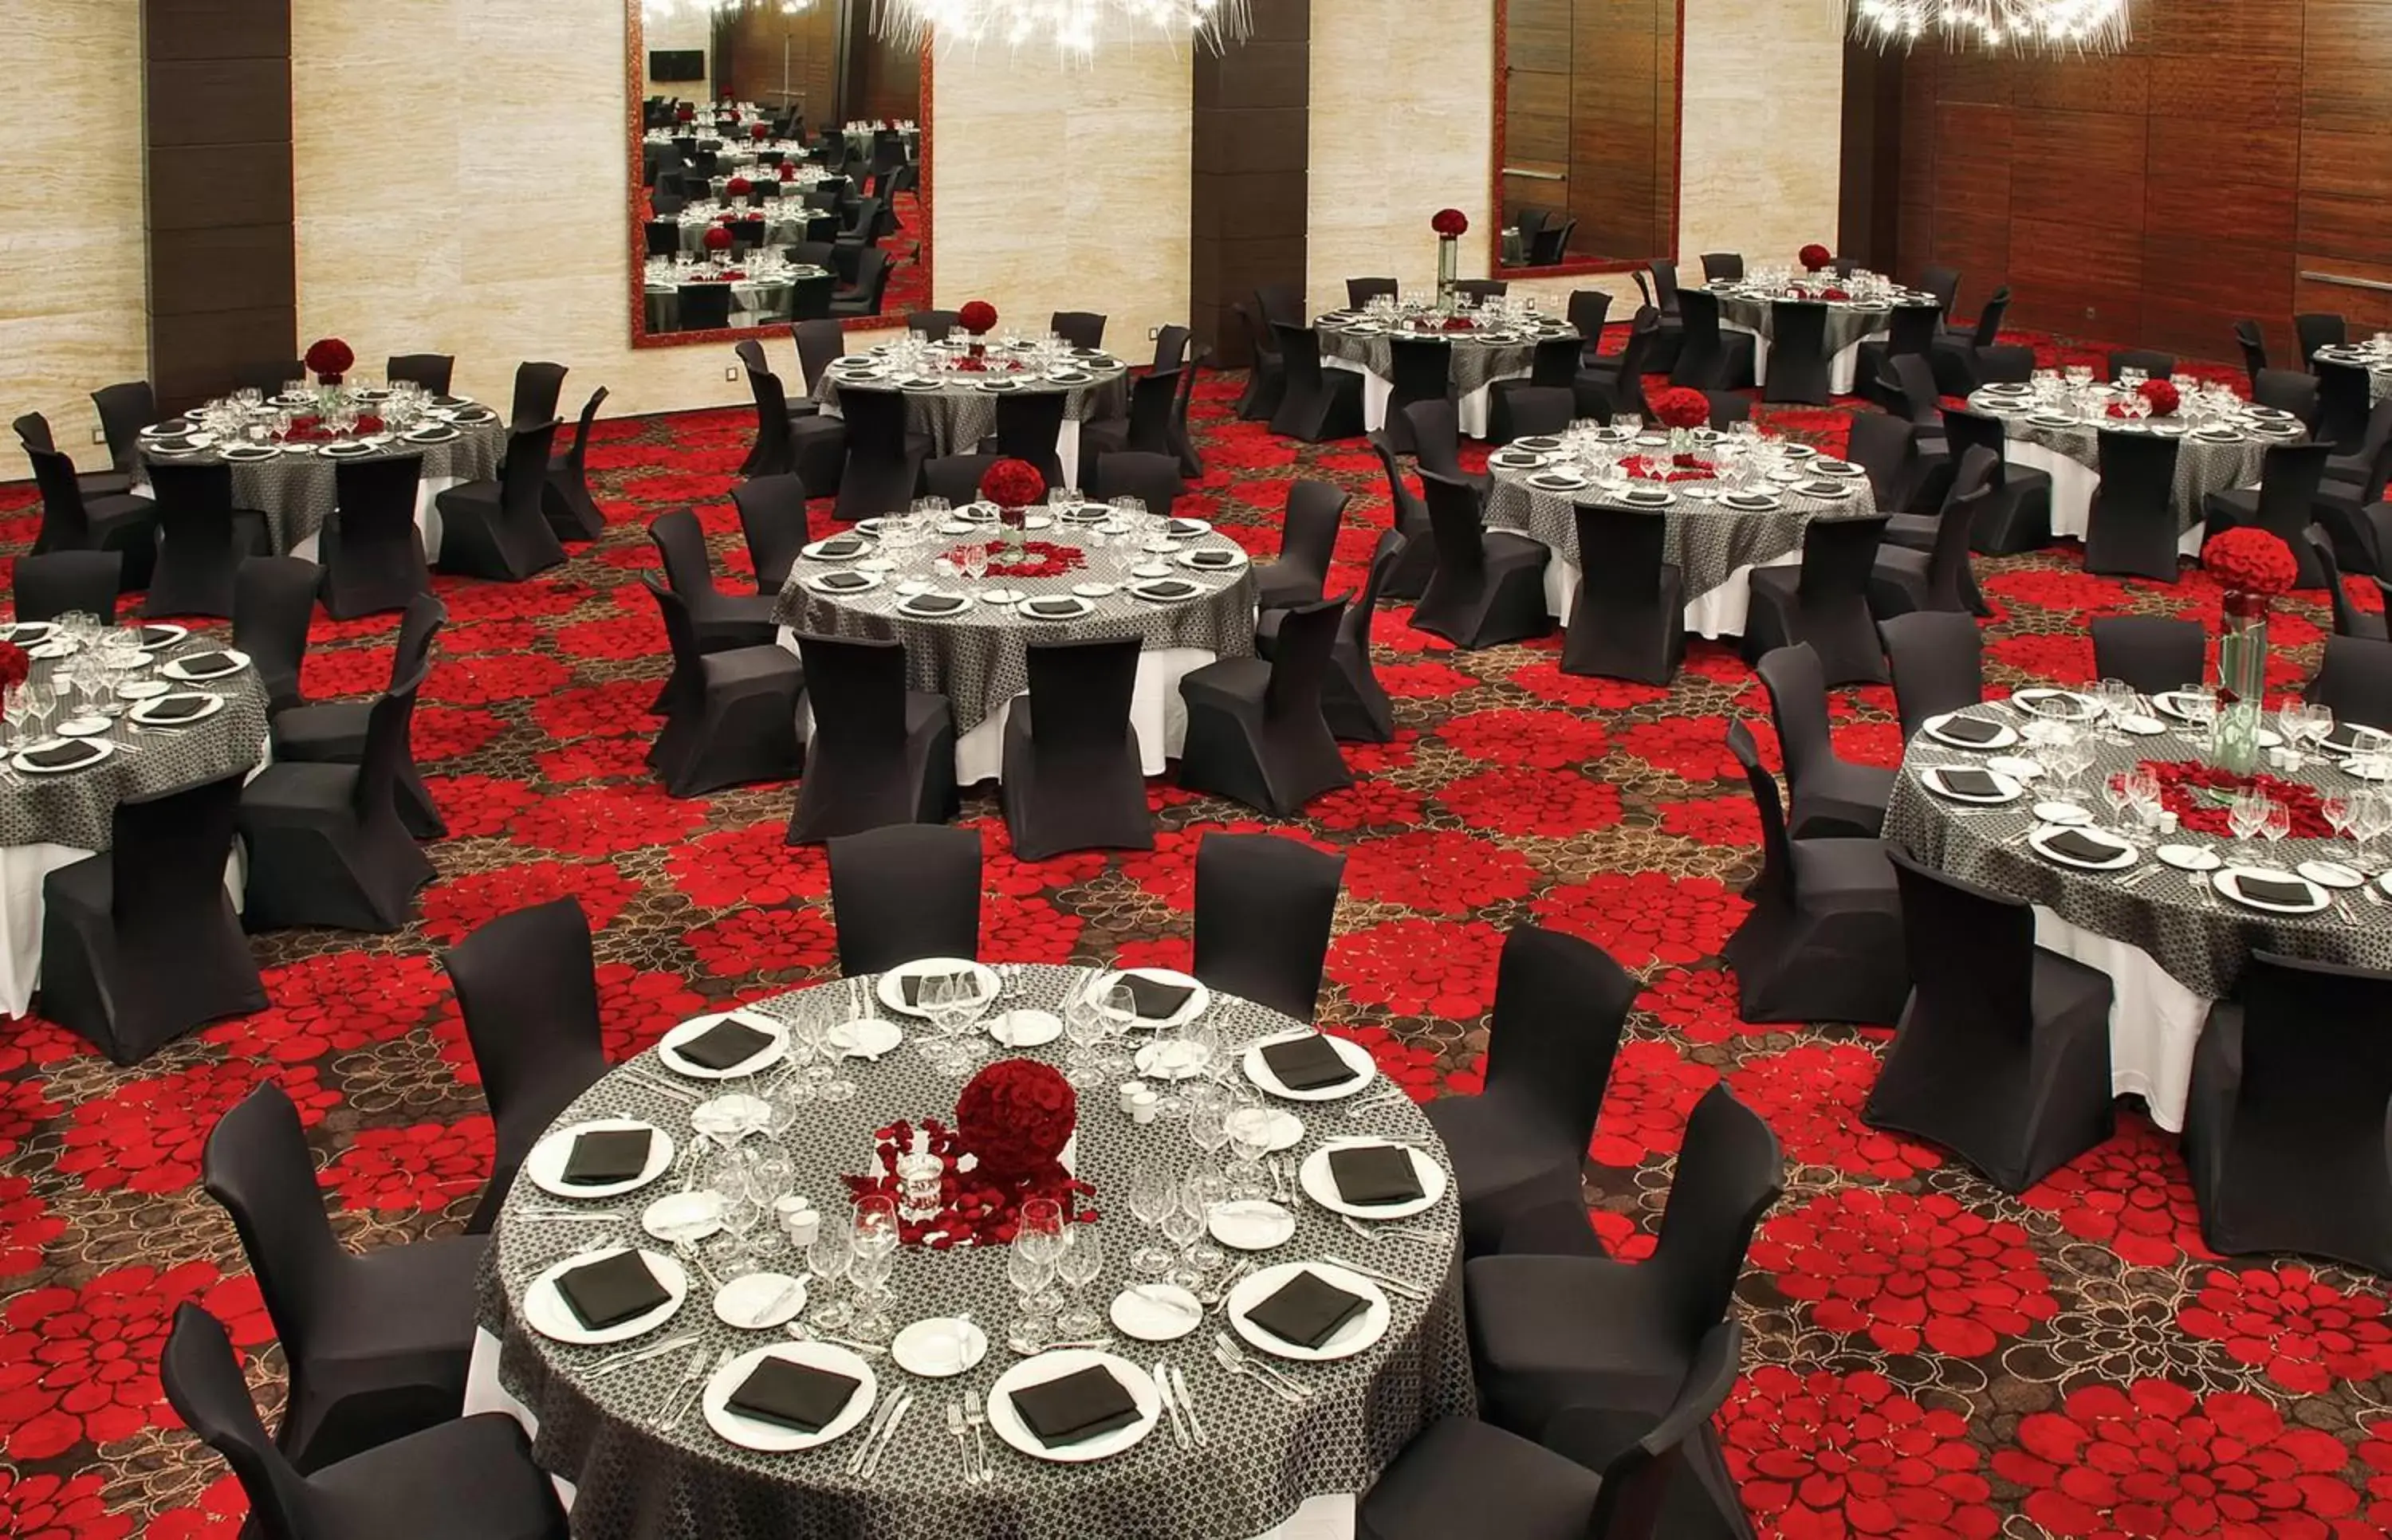 Banquet/Function facilities, Banquet Facilities in JW Marriott Hotel Mexico City Santa Fe